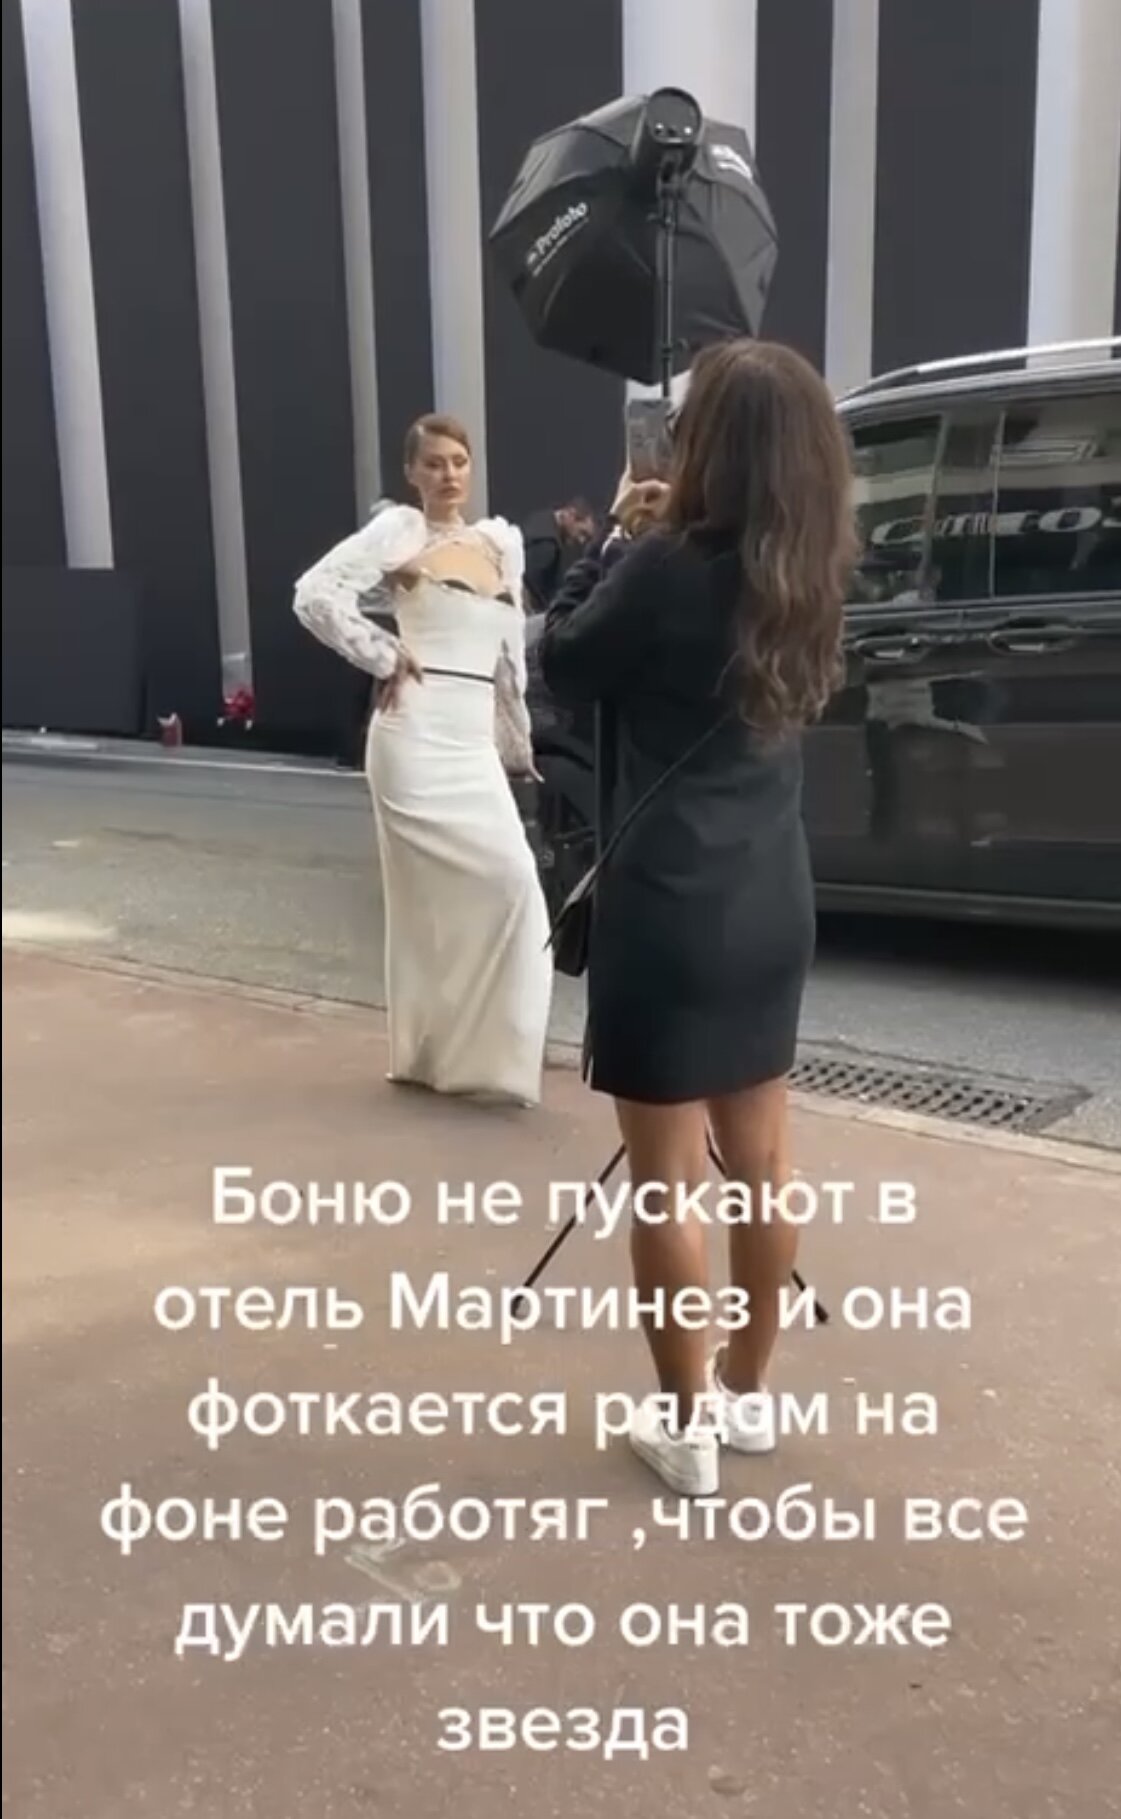 Виктория Боня в Каннах ловит знаменитостей по туалетам, а Ирина Шейк снова поражает публику «нарядом шлюхи»